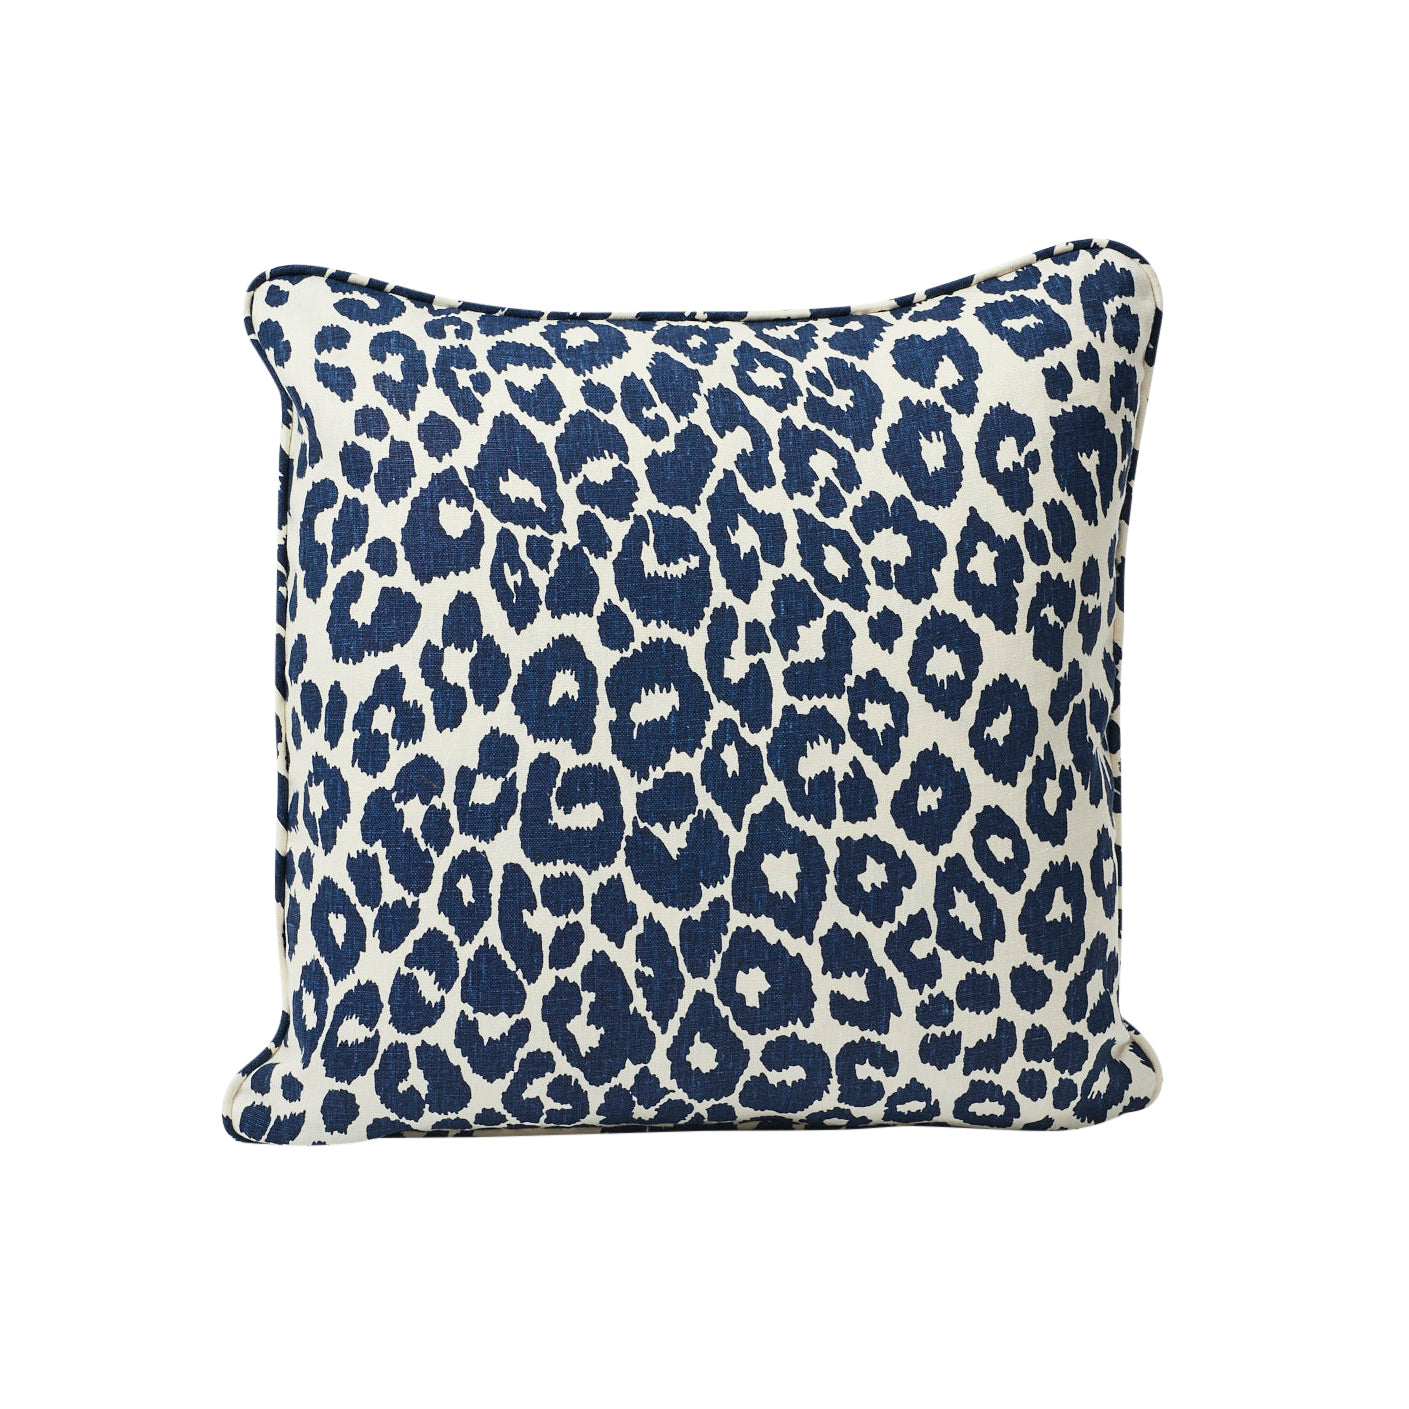 Iconico cuscino leopardato | Inchiostro